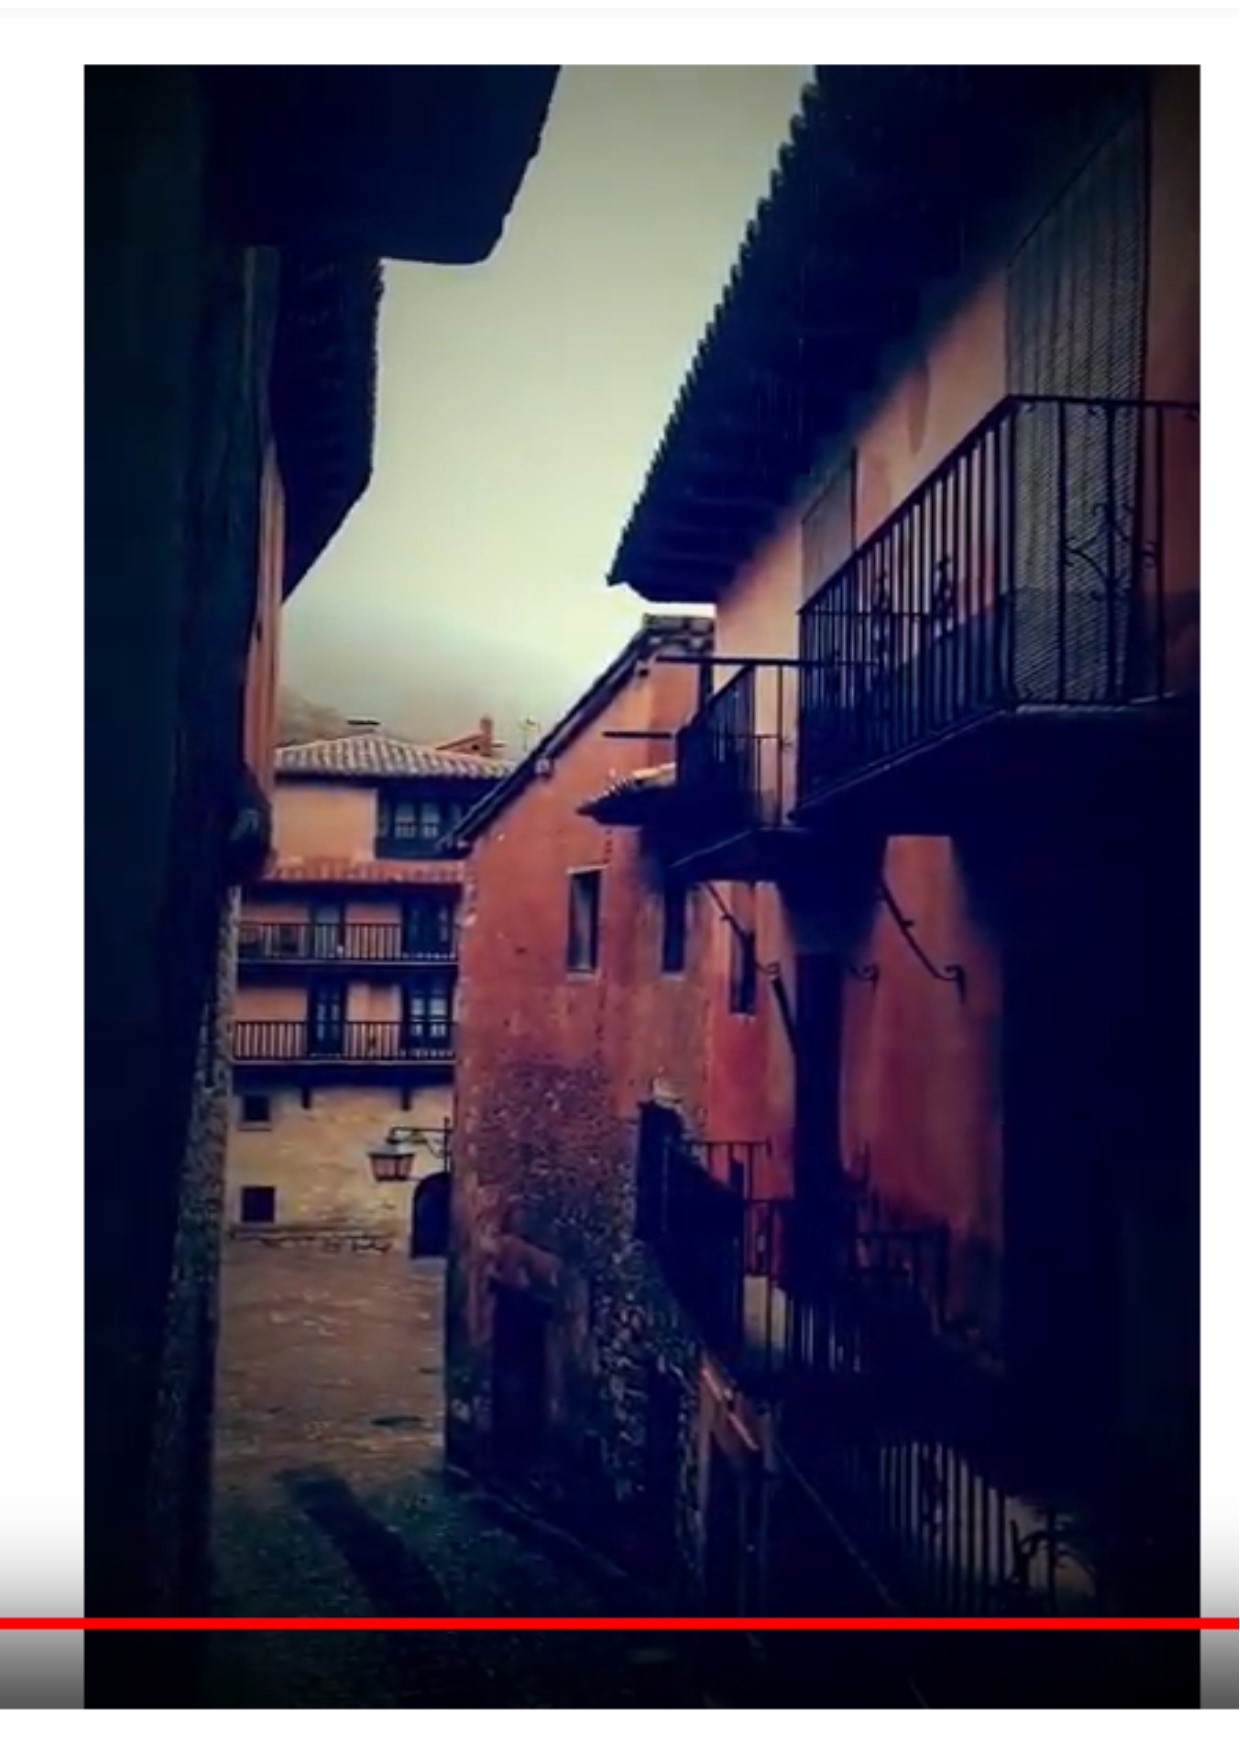 #Comenzamos #VisitaGuiada en #Albarracín #AlbarracínEspecial #CasaMuseo y #Teruel …la #lluvia no nos frenará